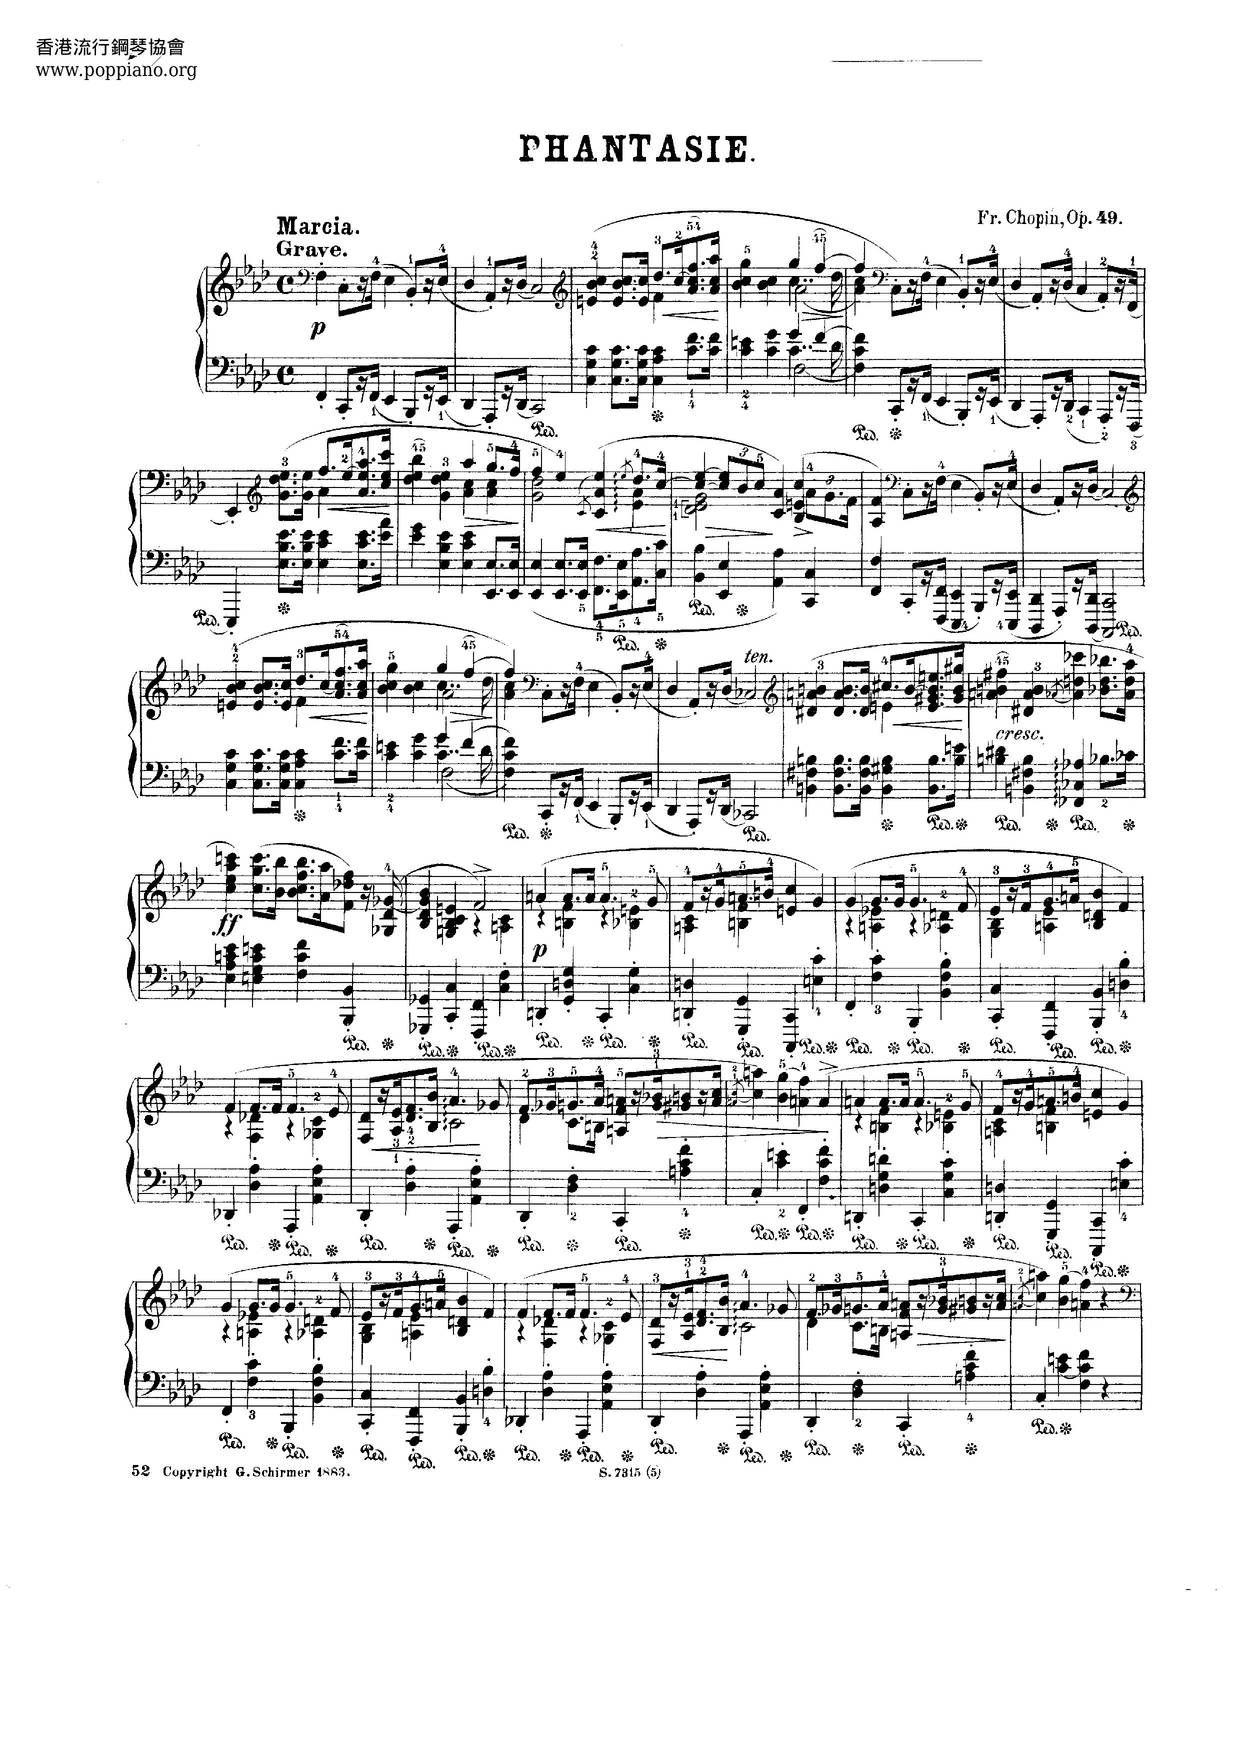 Fantasy, Op. 49 Score